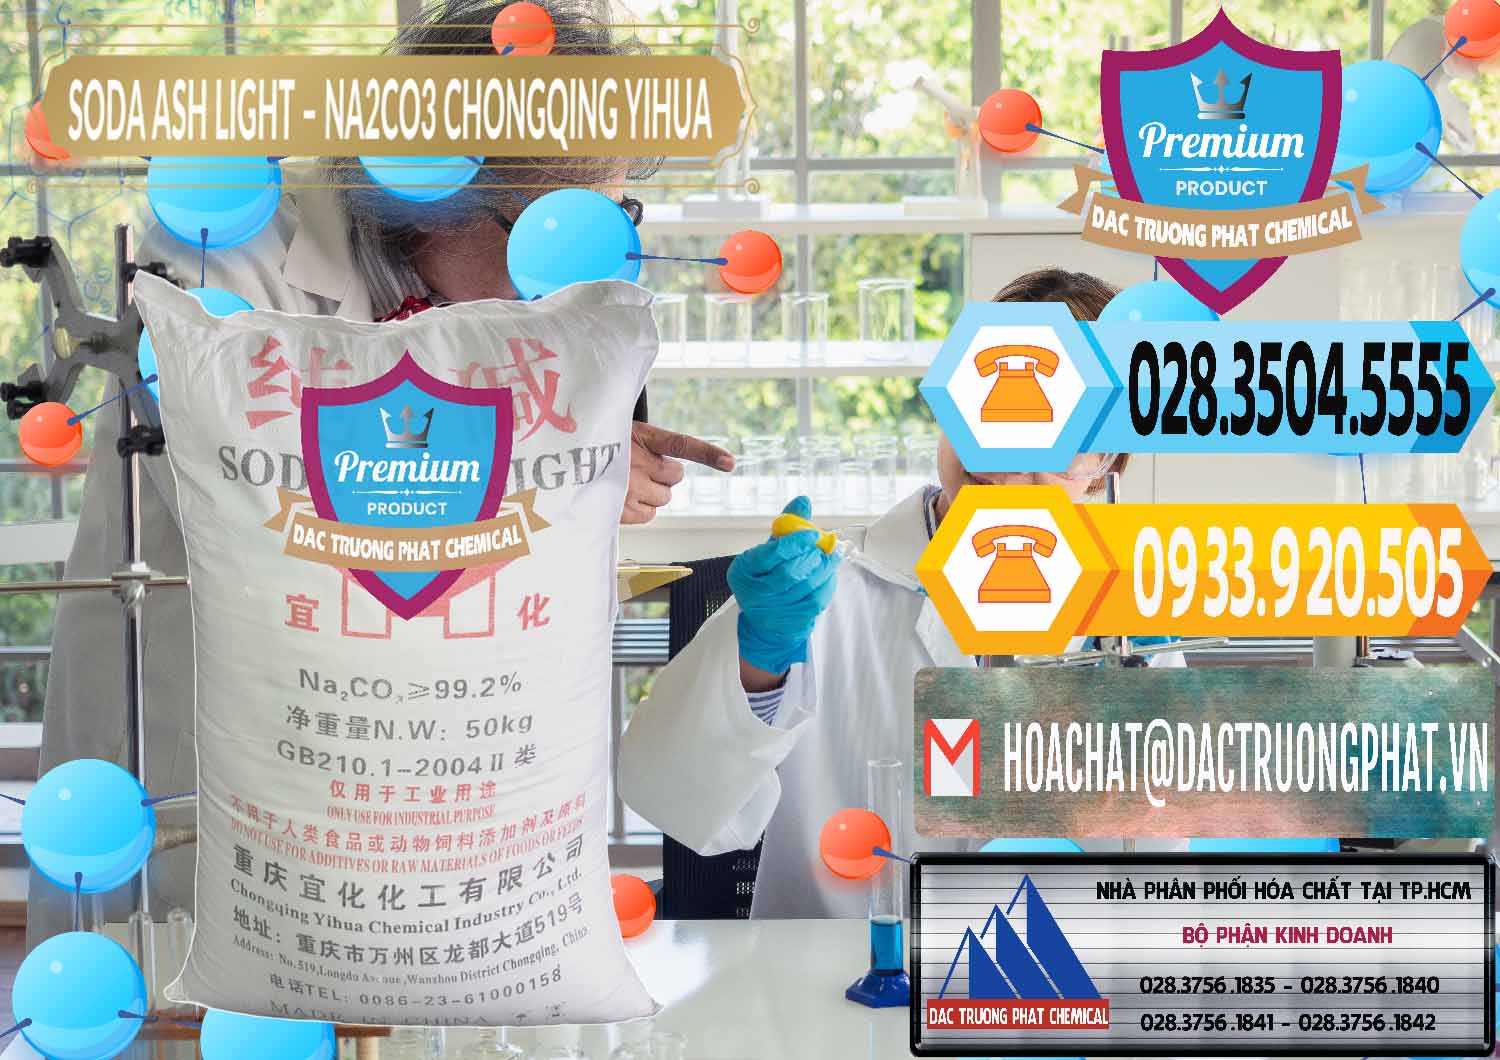 Công ty nhập khẩu - bán Soda Ash Light - NA2CO3 Chongqing Yihua Trung Quốc China - 0129 - Nơi chuyên cung ứng _ phân phối hóa chất tại TP.HCM - hoachattayrua.net